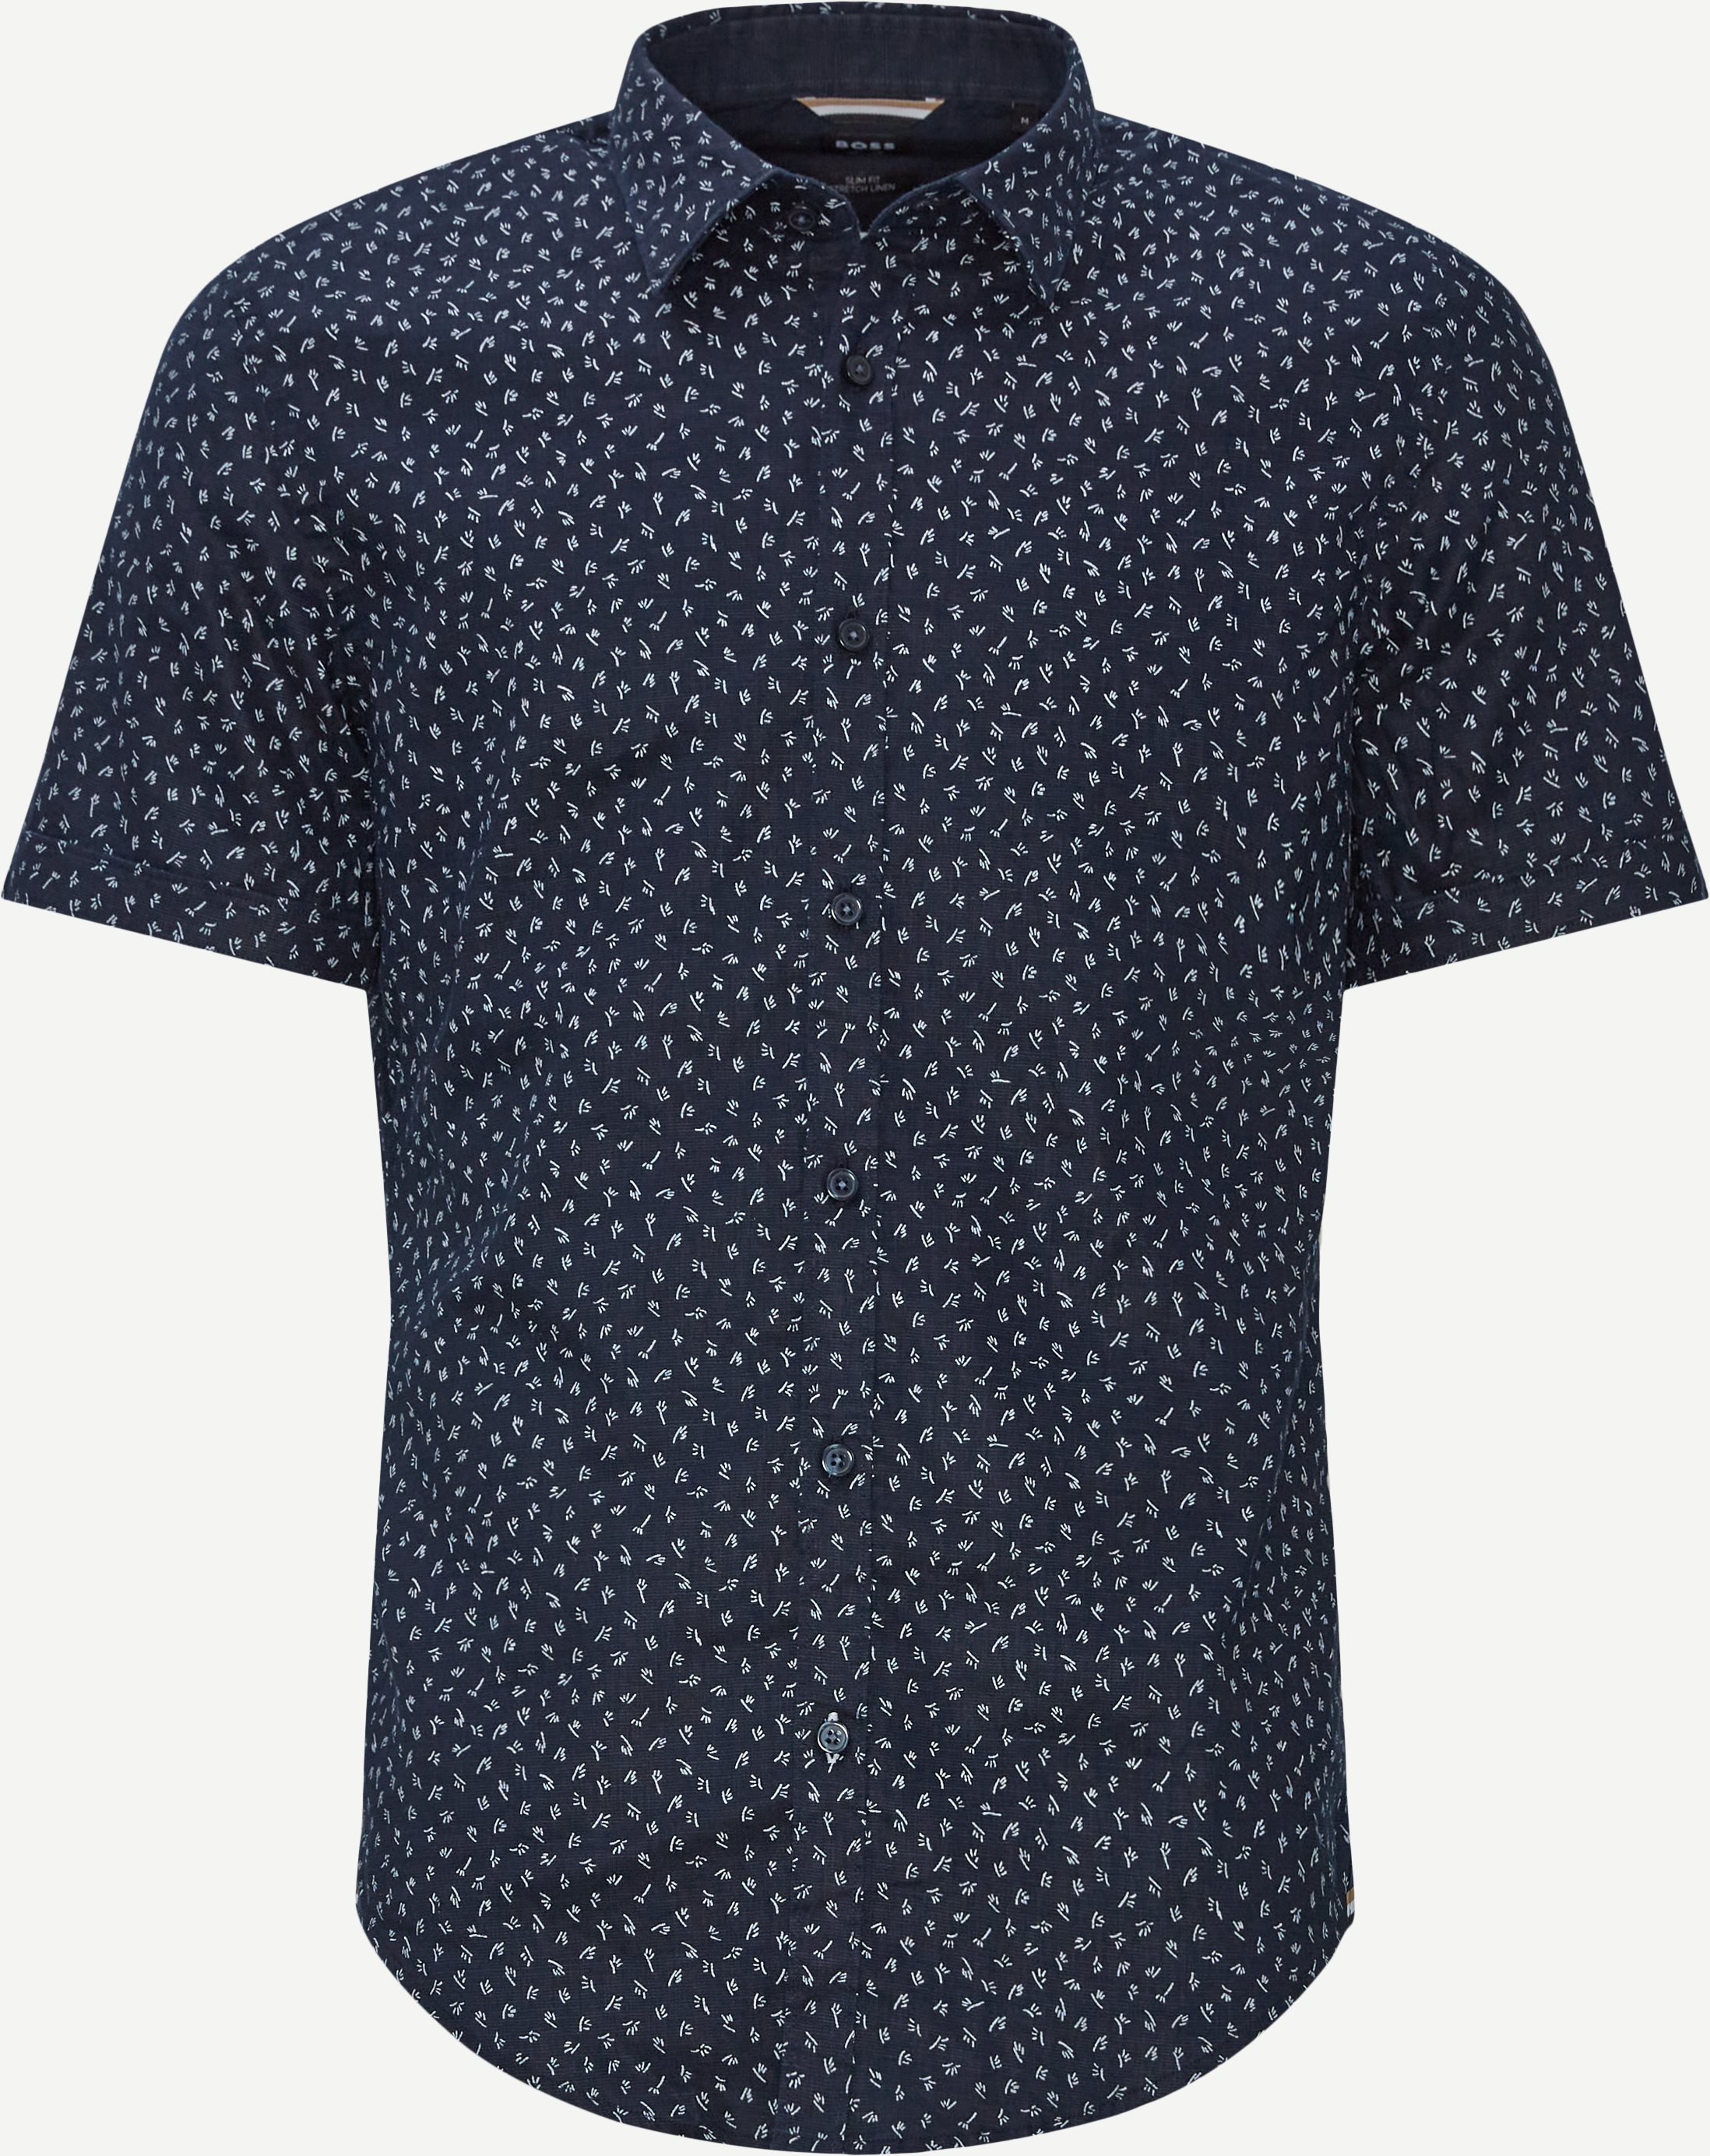 Kortärmade skjortor - Slim fit - Blå